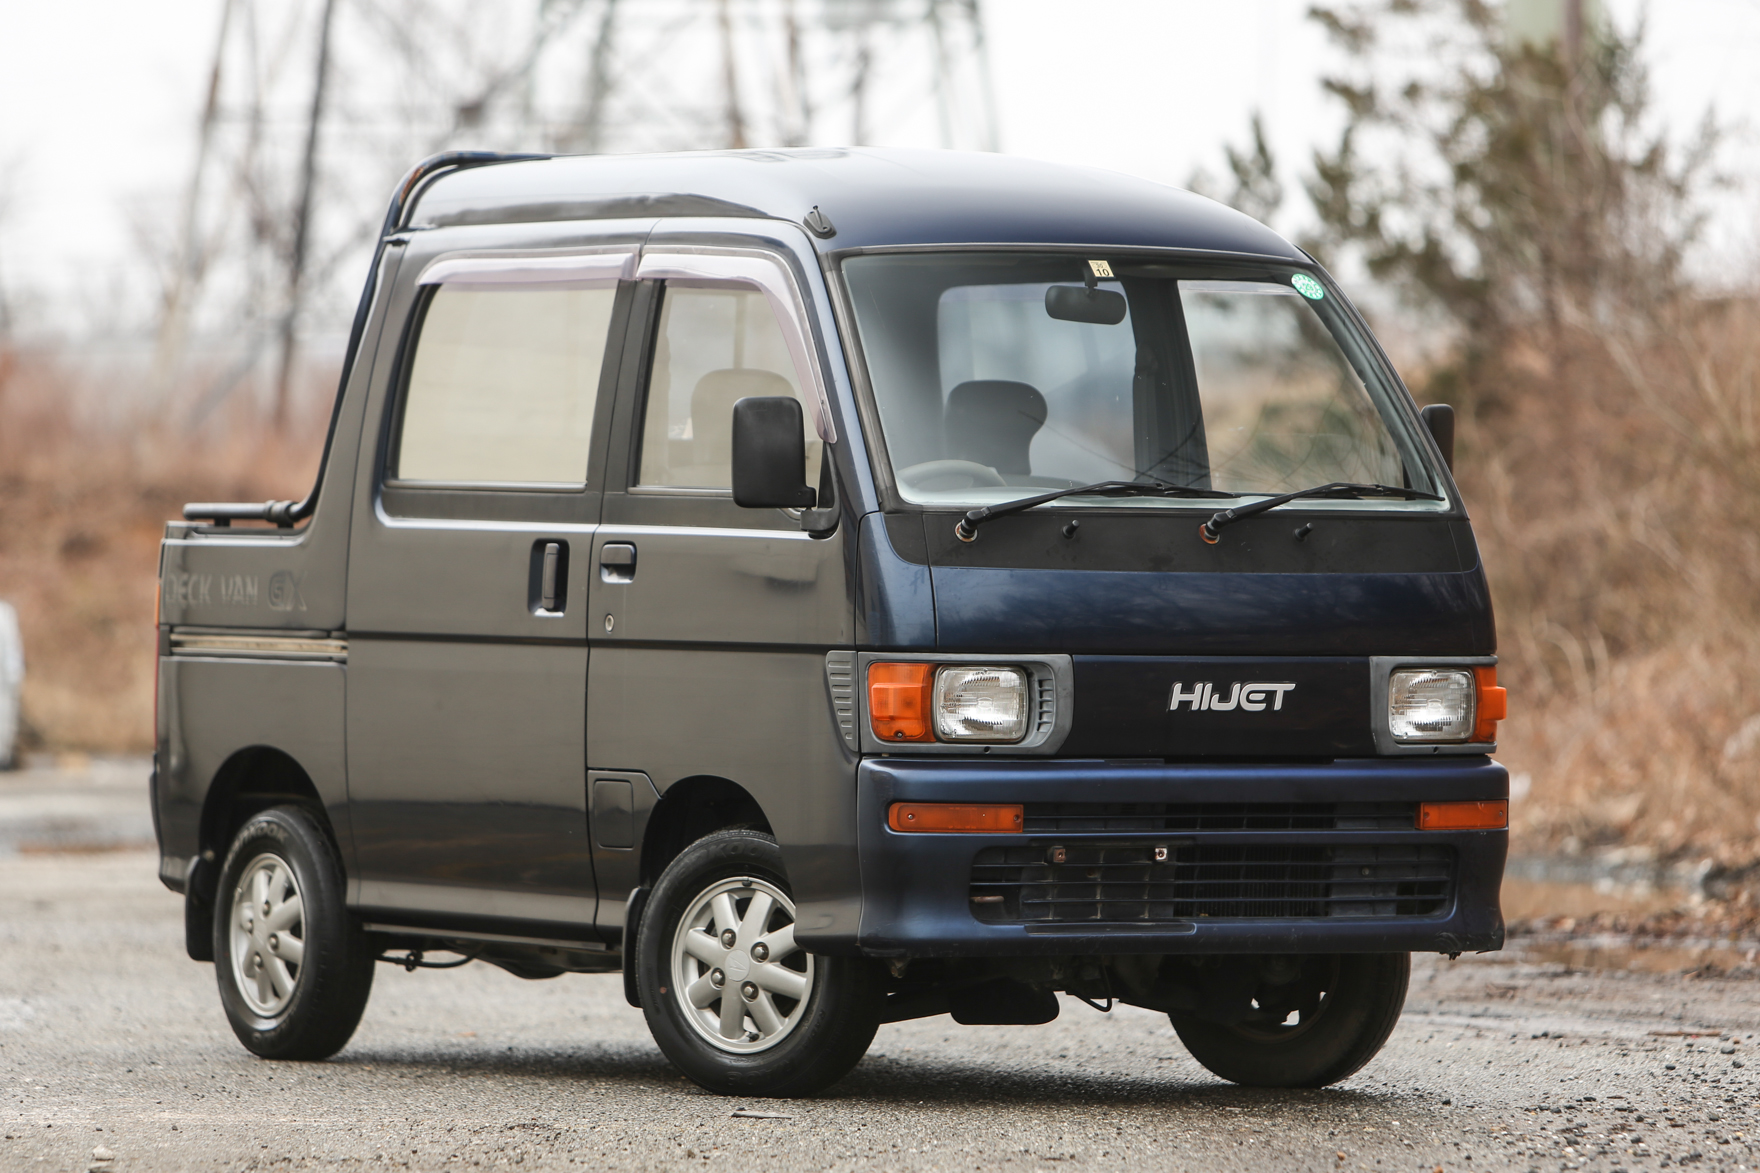 1994 Daihatsu HiJet Deck Van - $8,595